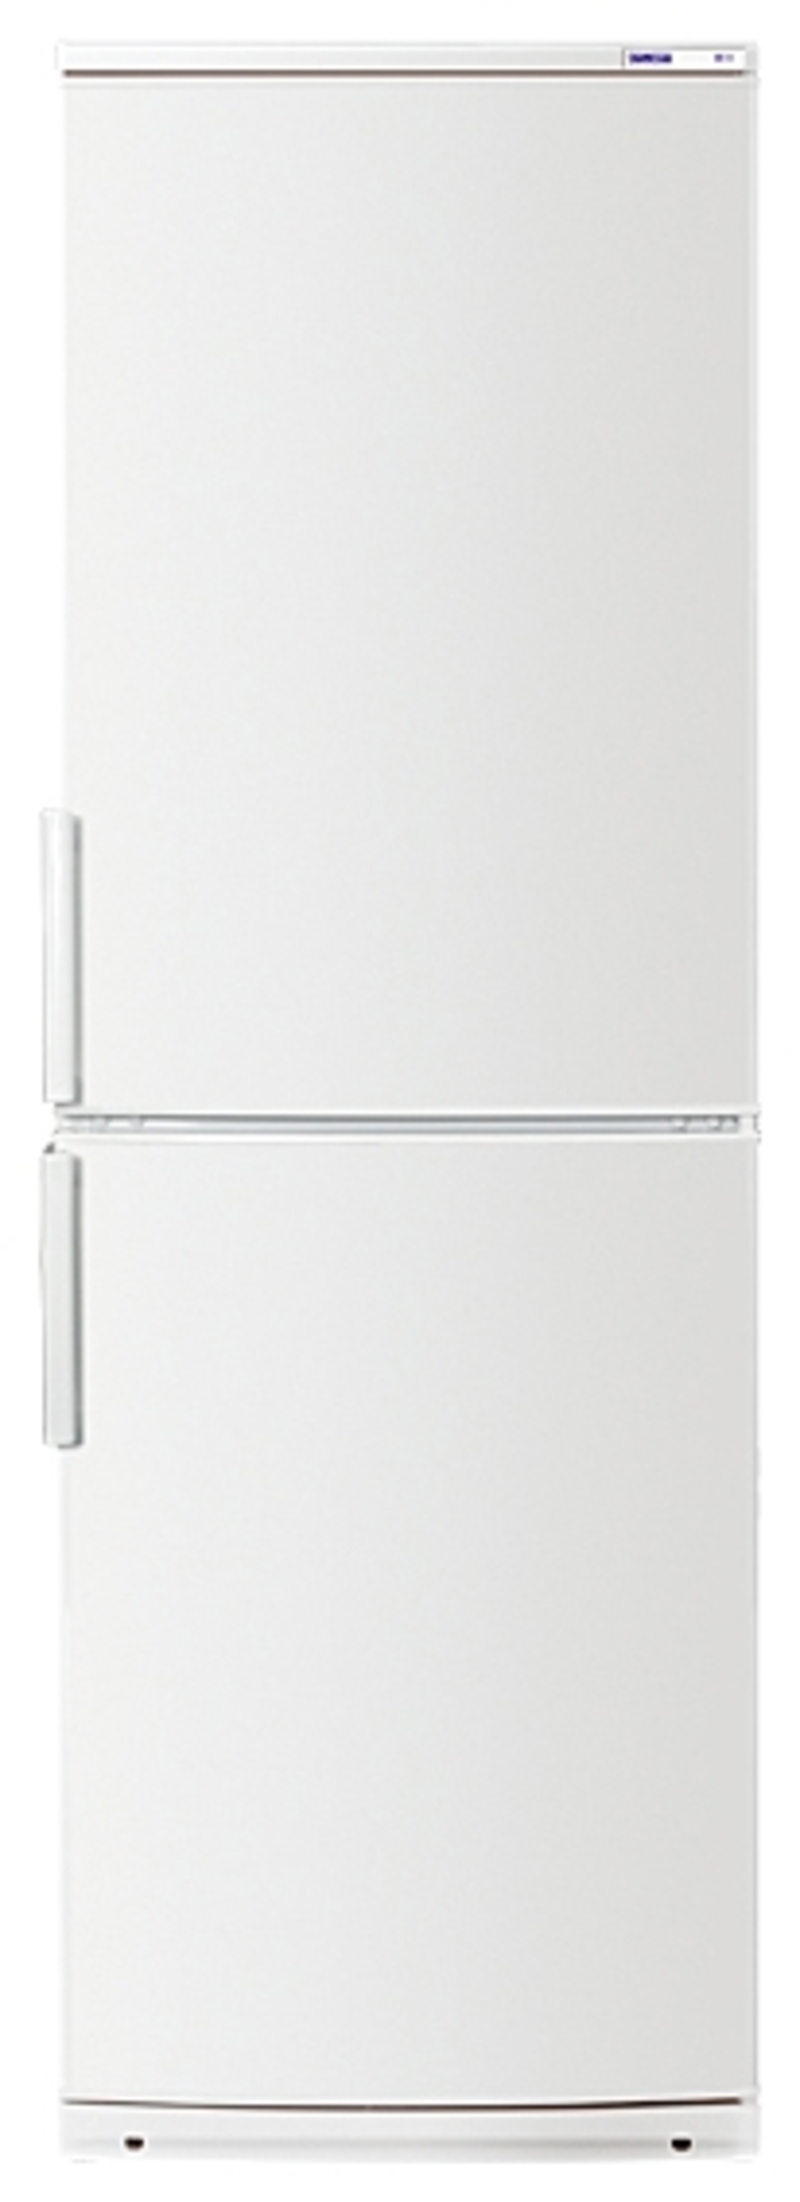 90469231 Отдельностоящий холодильник Х-КХМ-4025-000 60x205 см цвет белый STLM-0239116 АТЛАНТ